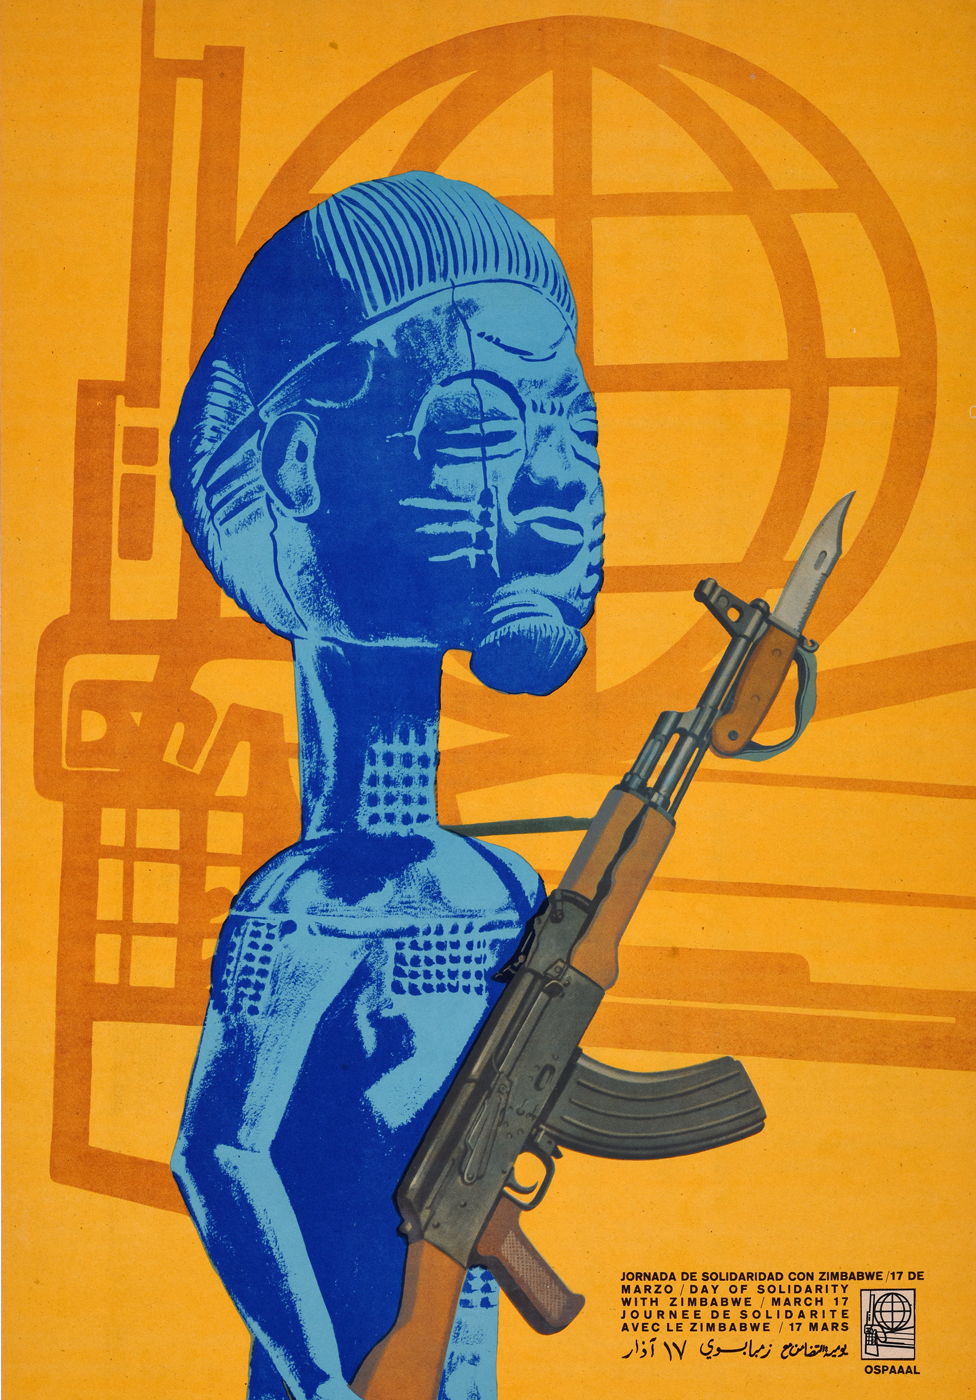 Плакат Ospaaal под названием «День солидарности с Зимбабве, 1969 г.», на котором изображена статуя с ружьем